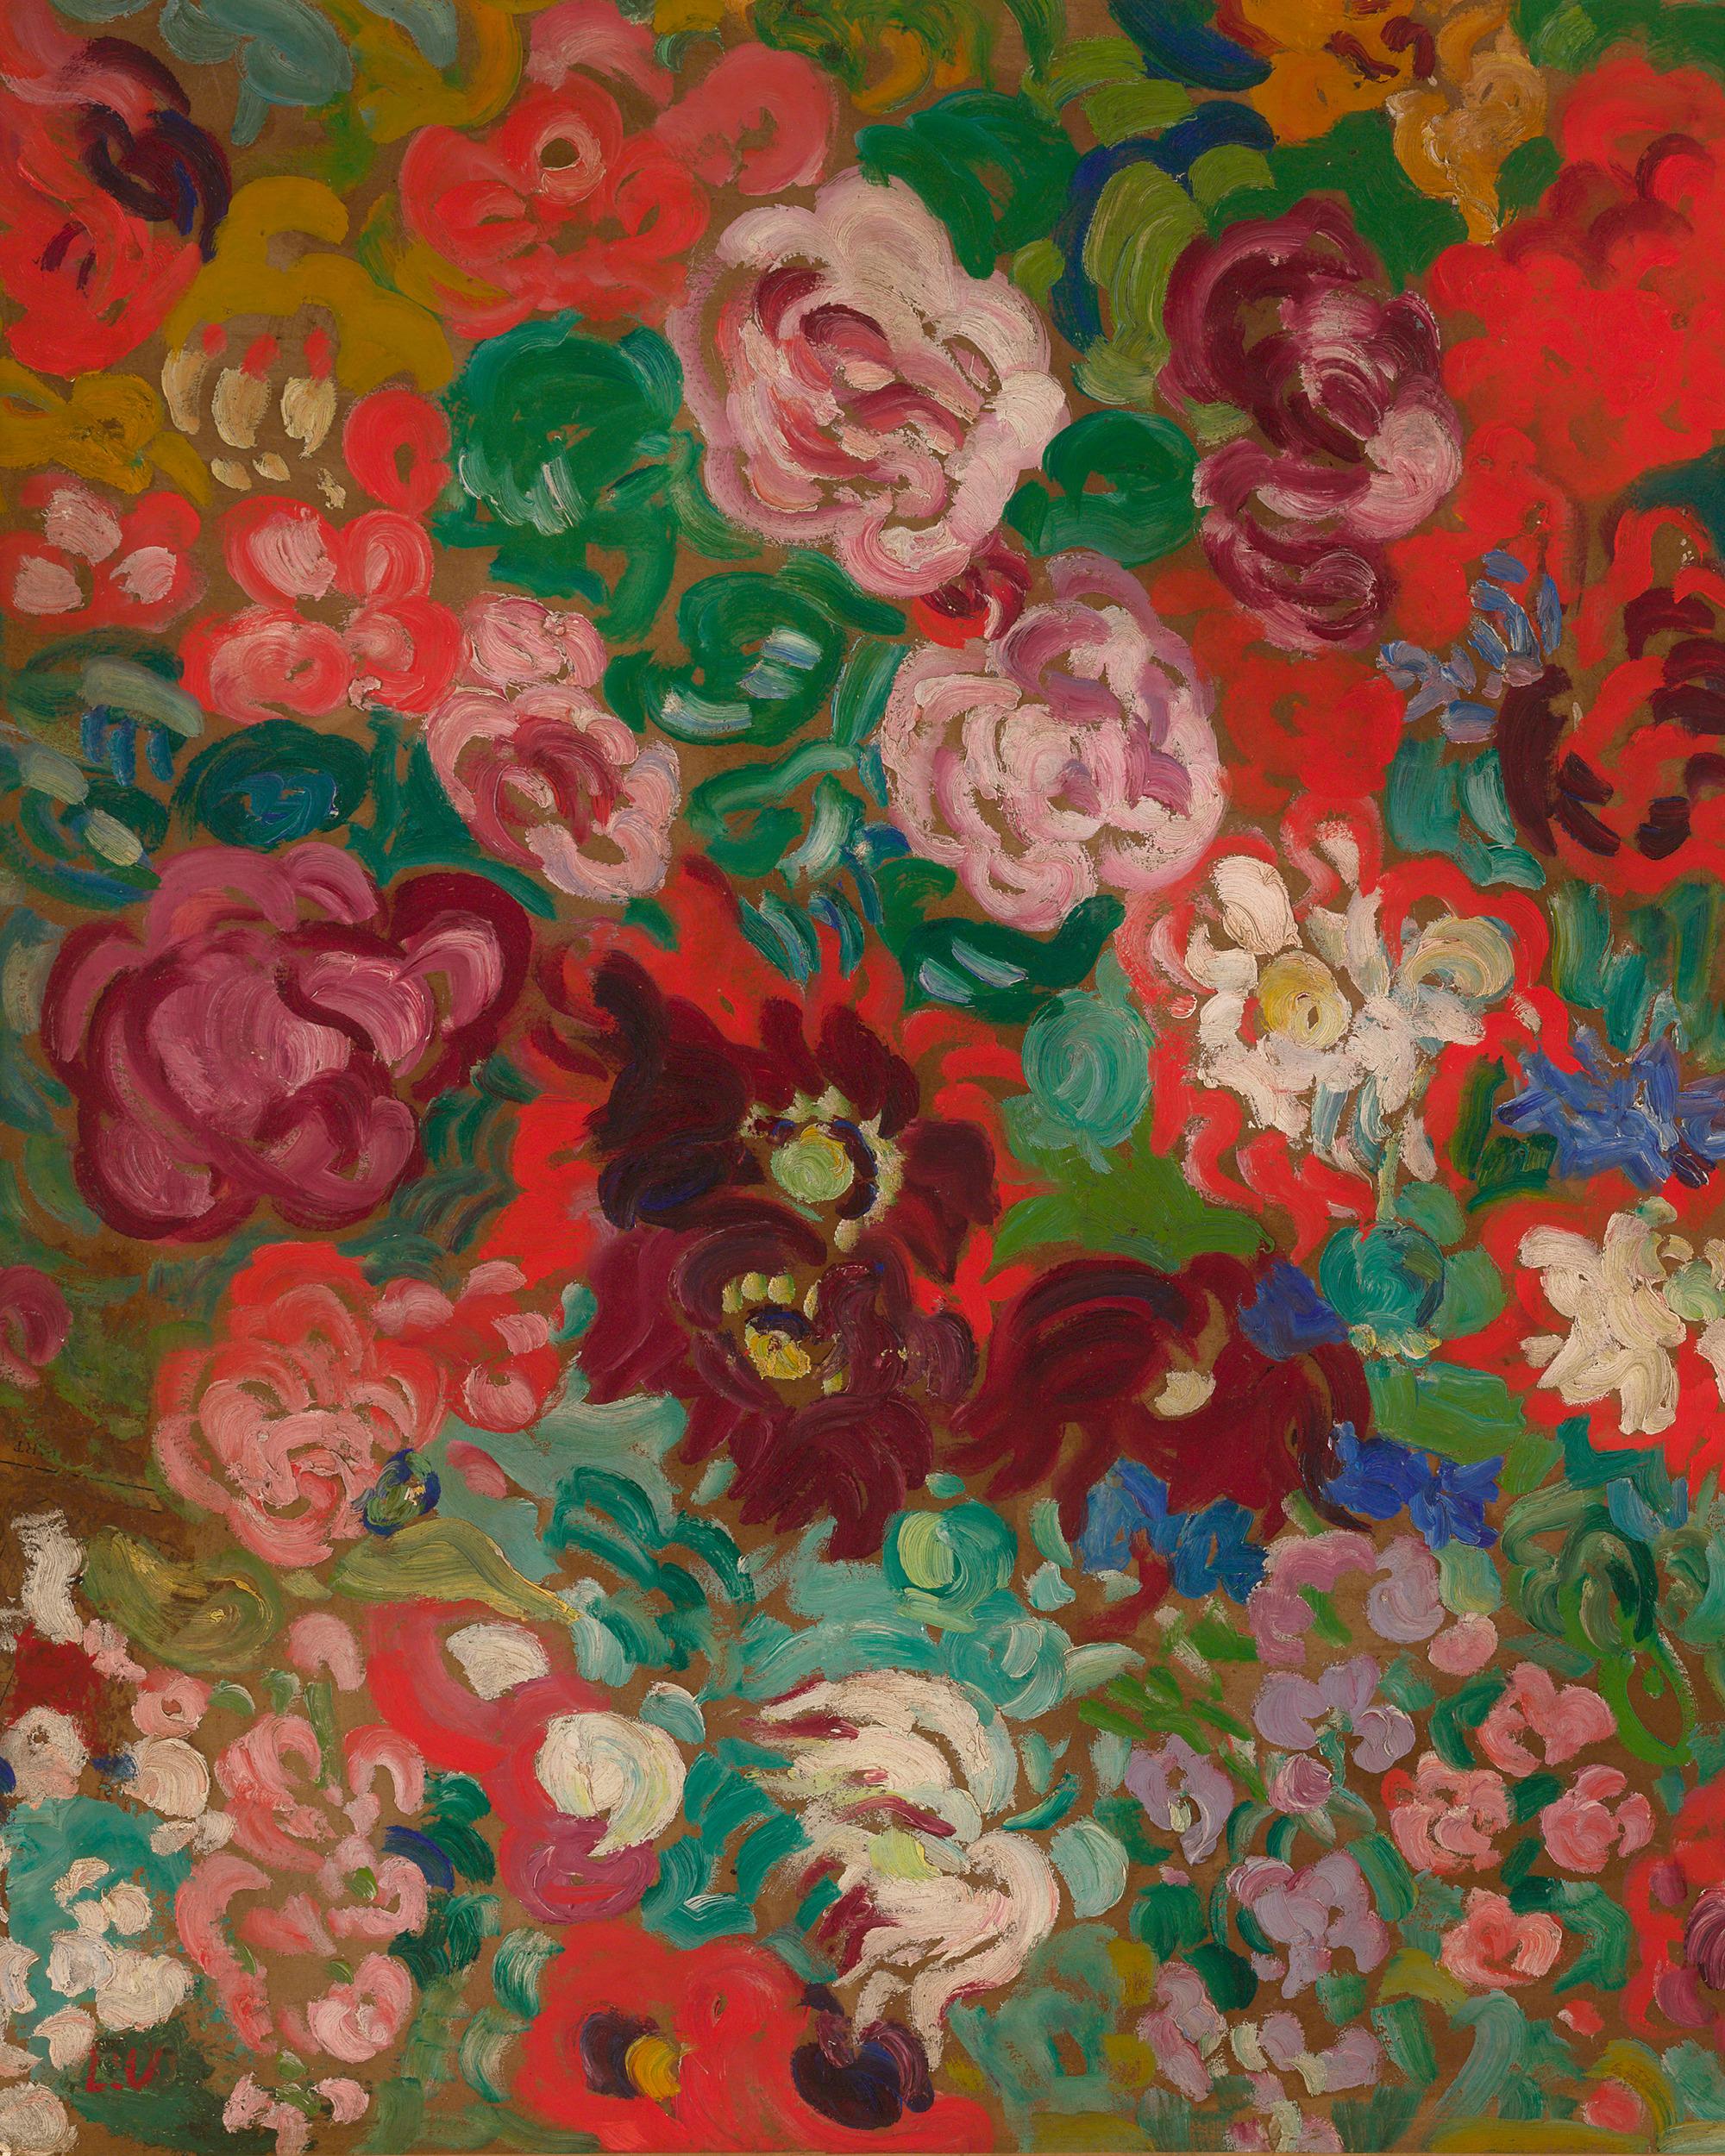 Panneau de fleurs - Post-Impressionist Painting by Louis Valtat